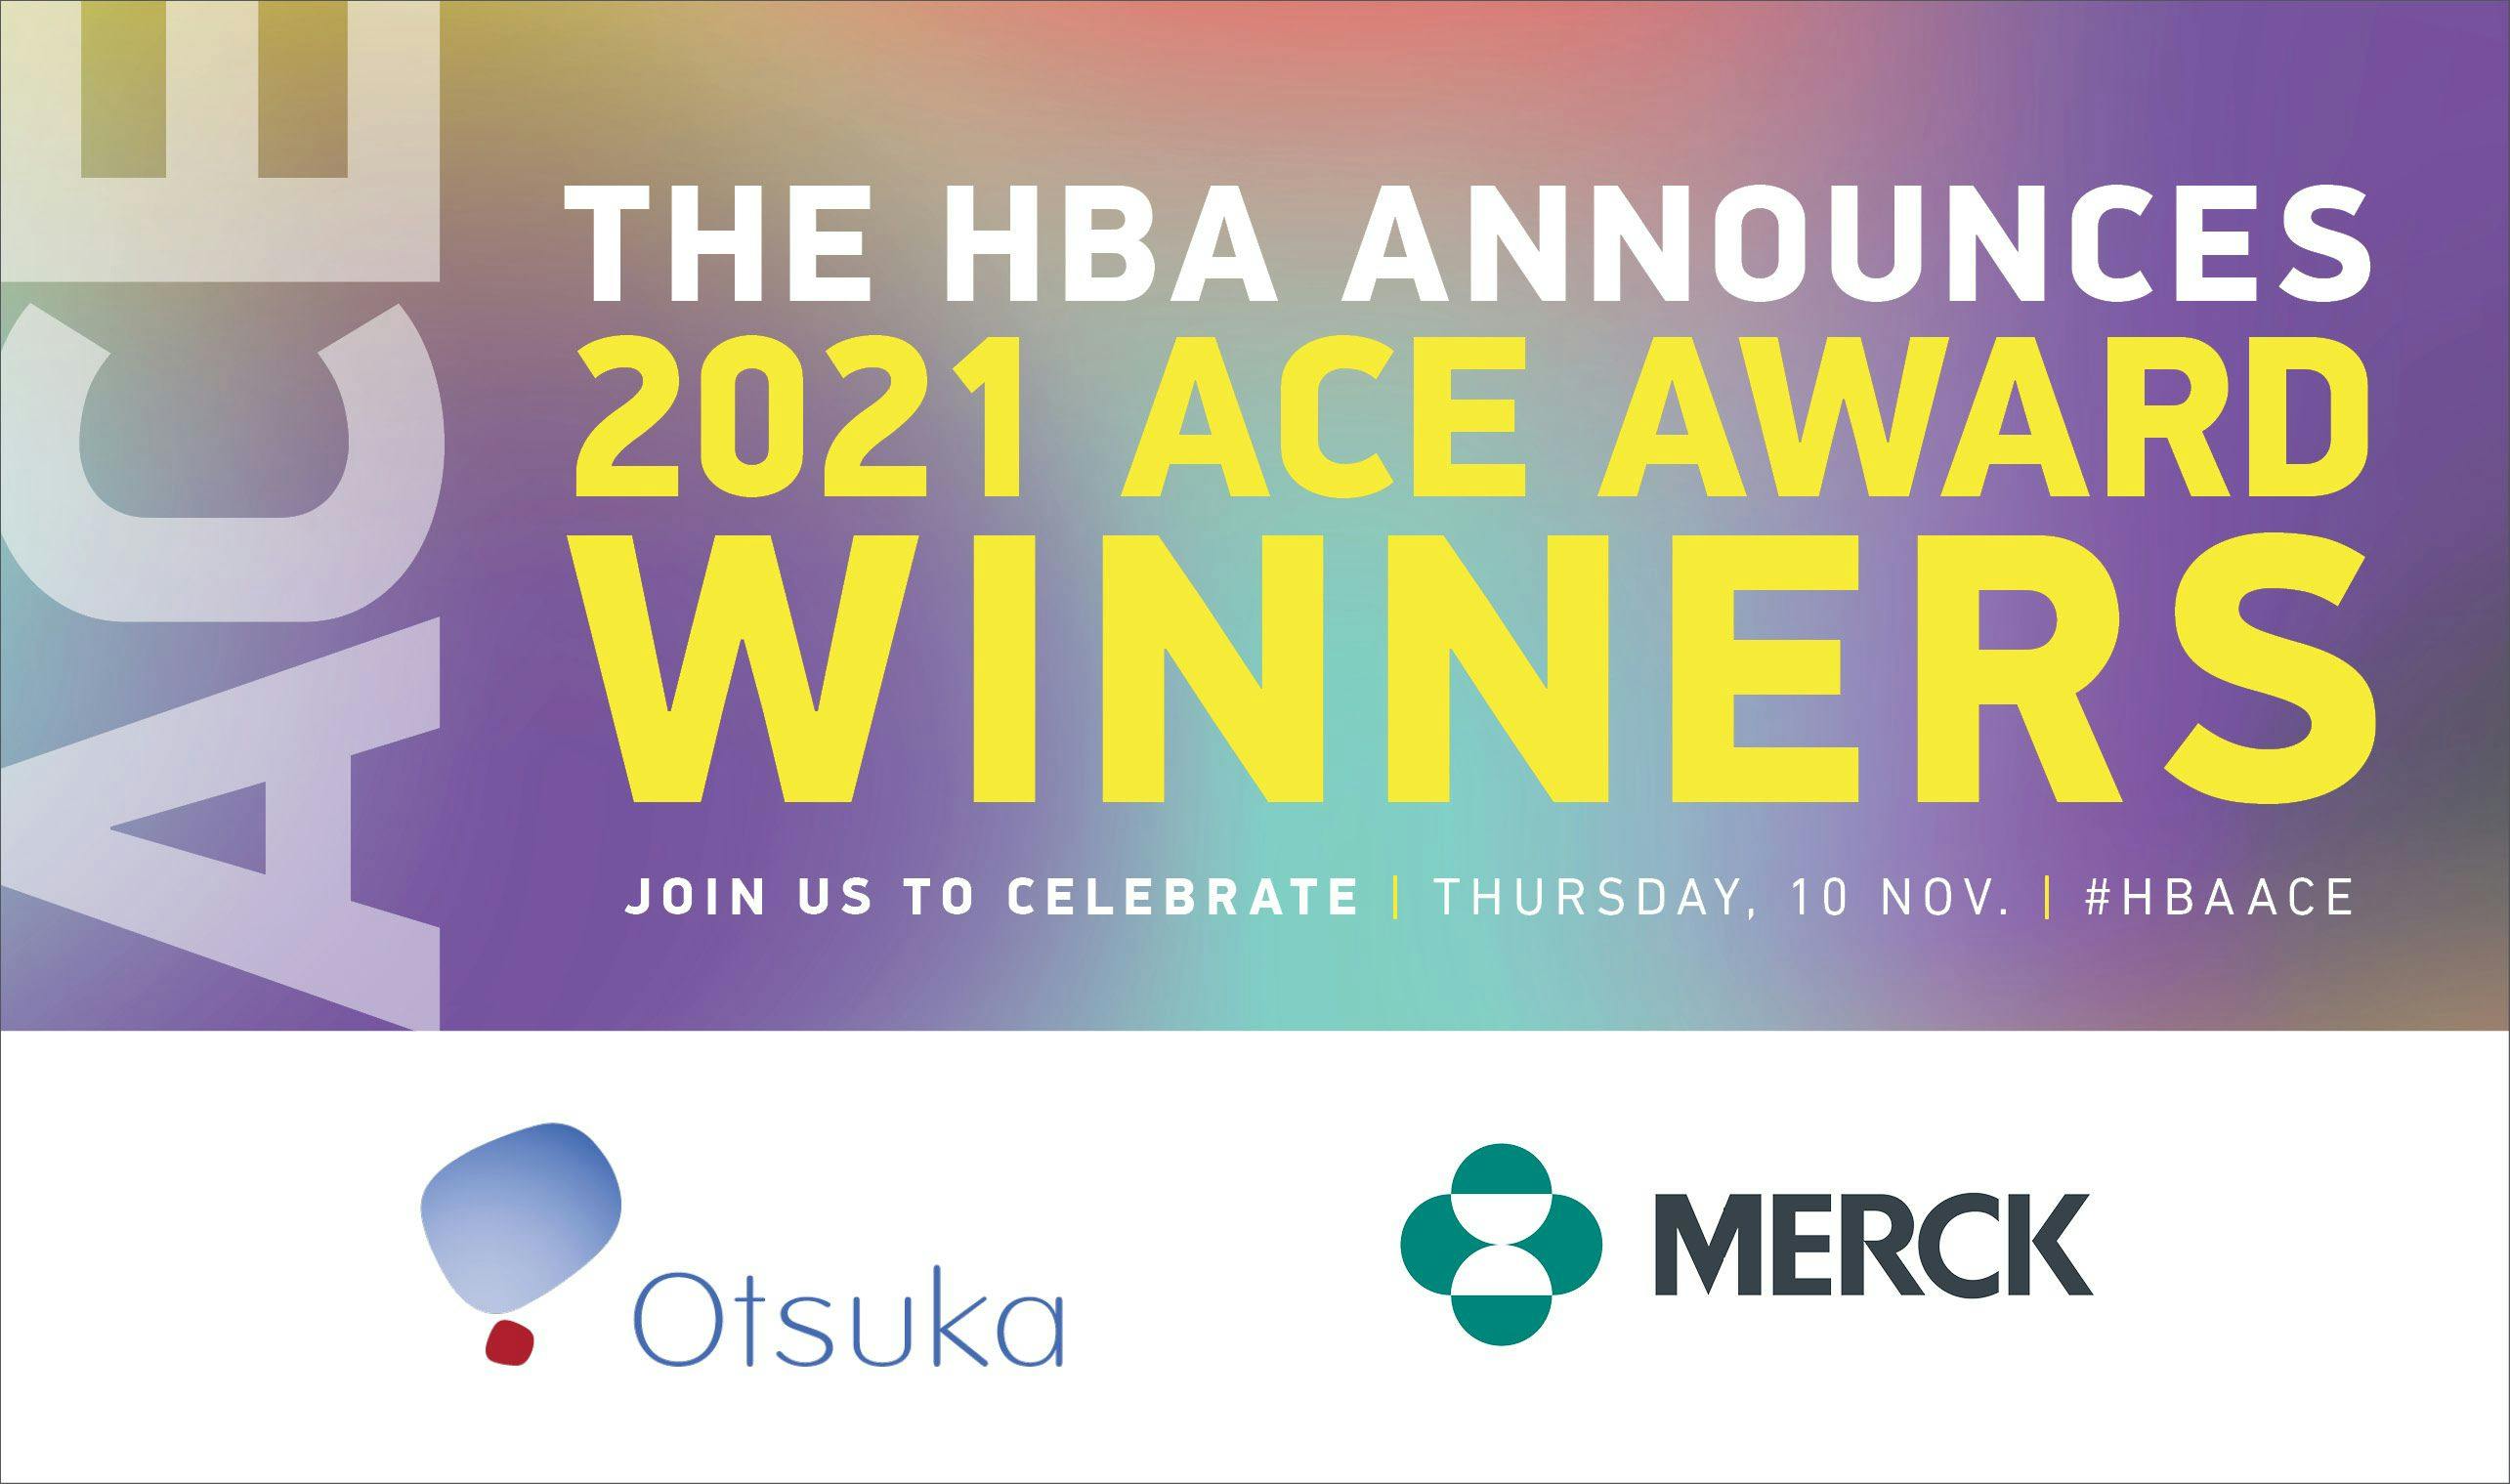 HBA Announces 2021 ACE Award Winners